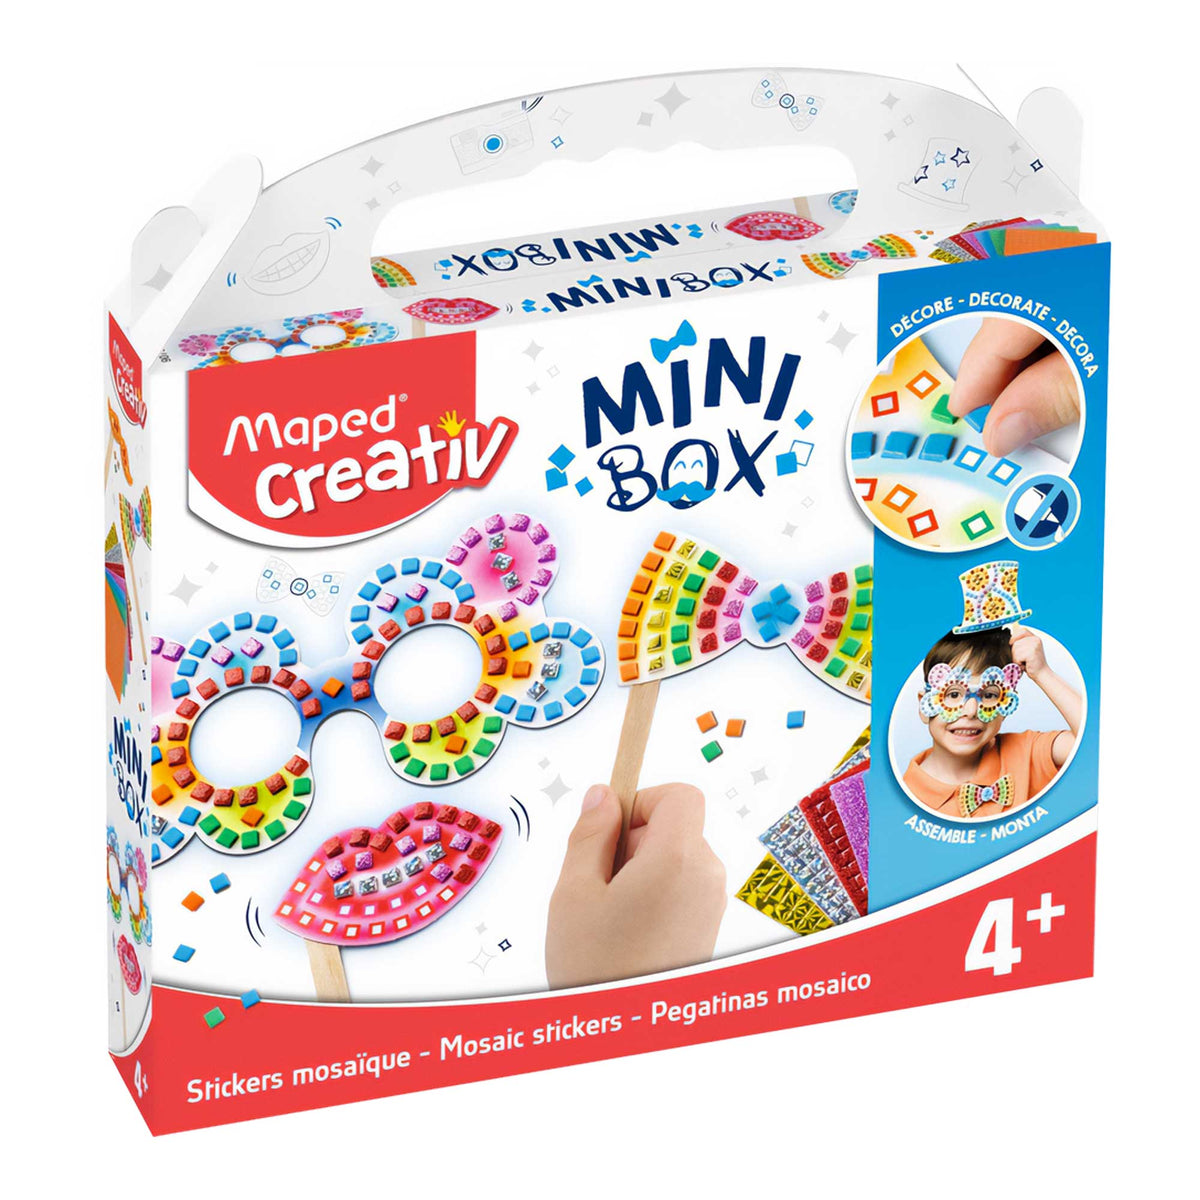 Maped Creativ Mini Box - Mosaic Stickers Kit Box